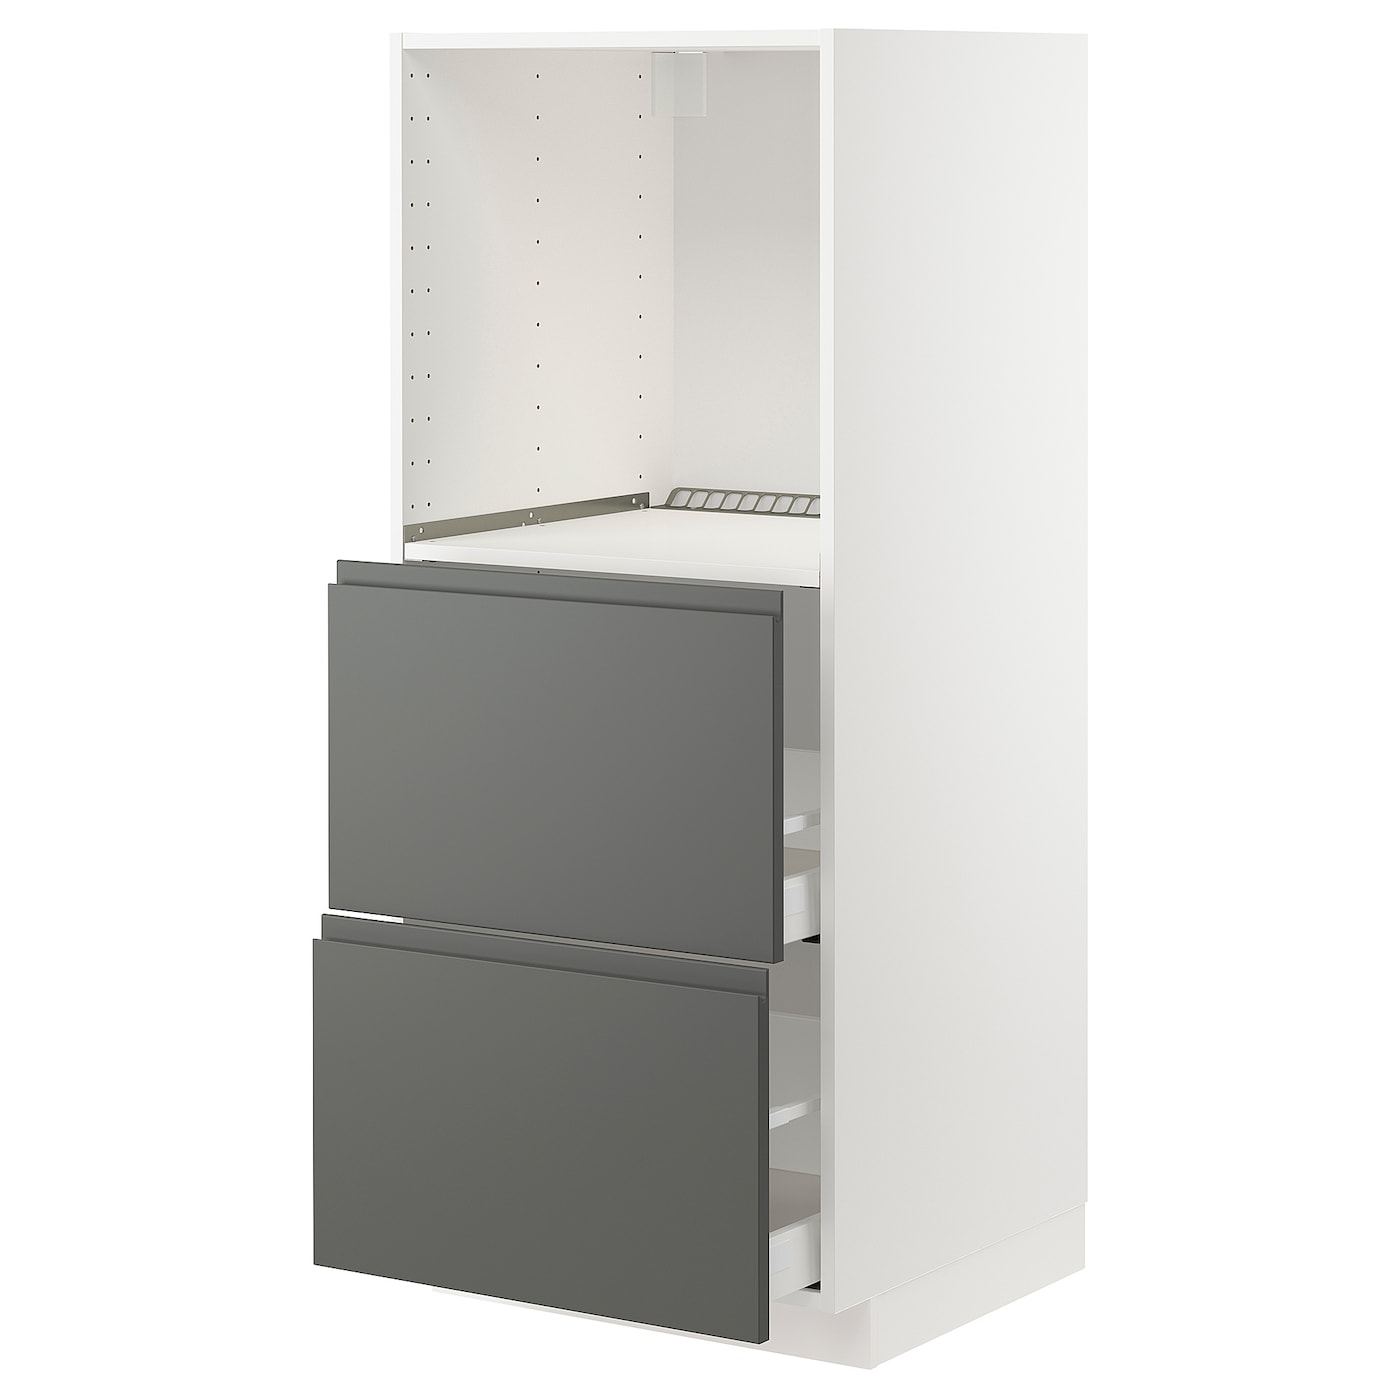 Напольный шкаф  - IKEA METOD MAXIMERA, 148x62,1x60см, белый/серый, МЕТОД МАКСИМЕРА ИКЕА